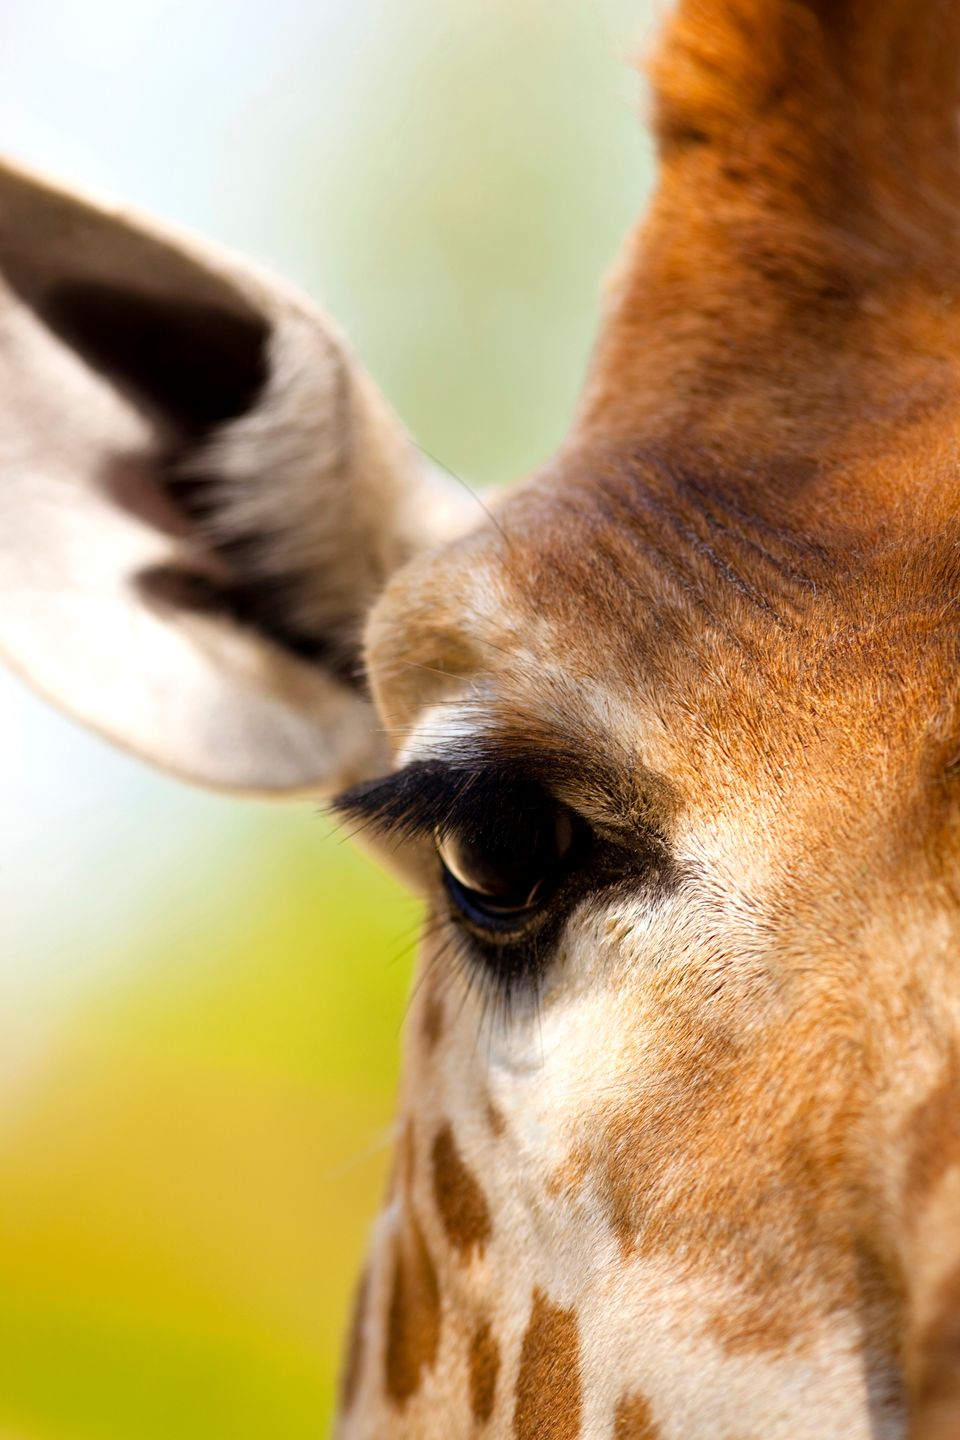 Giraf kigger direkte i kameraet